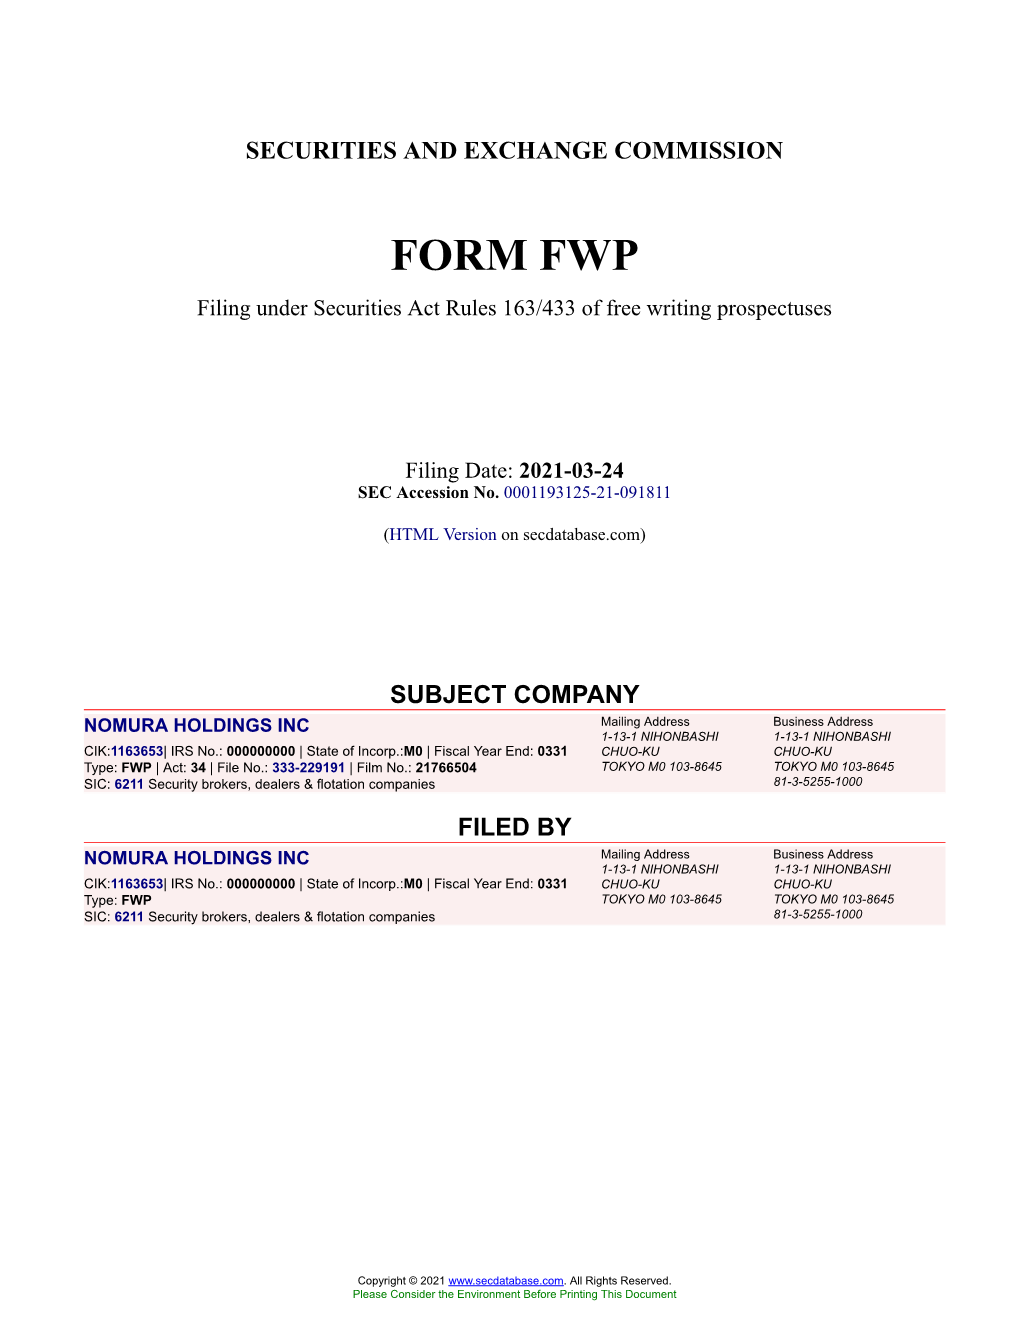 NOMURA HOLDINGS INC Form FWP Filed 2021-03-24